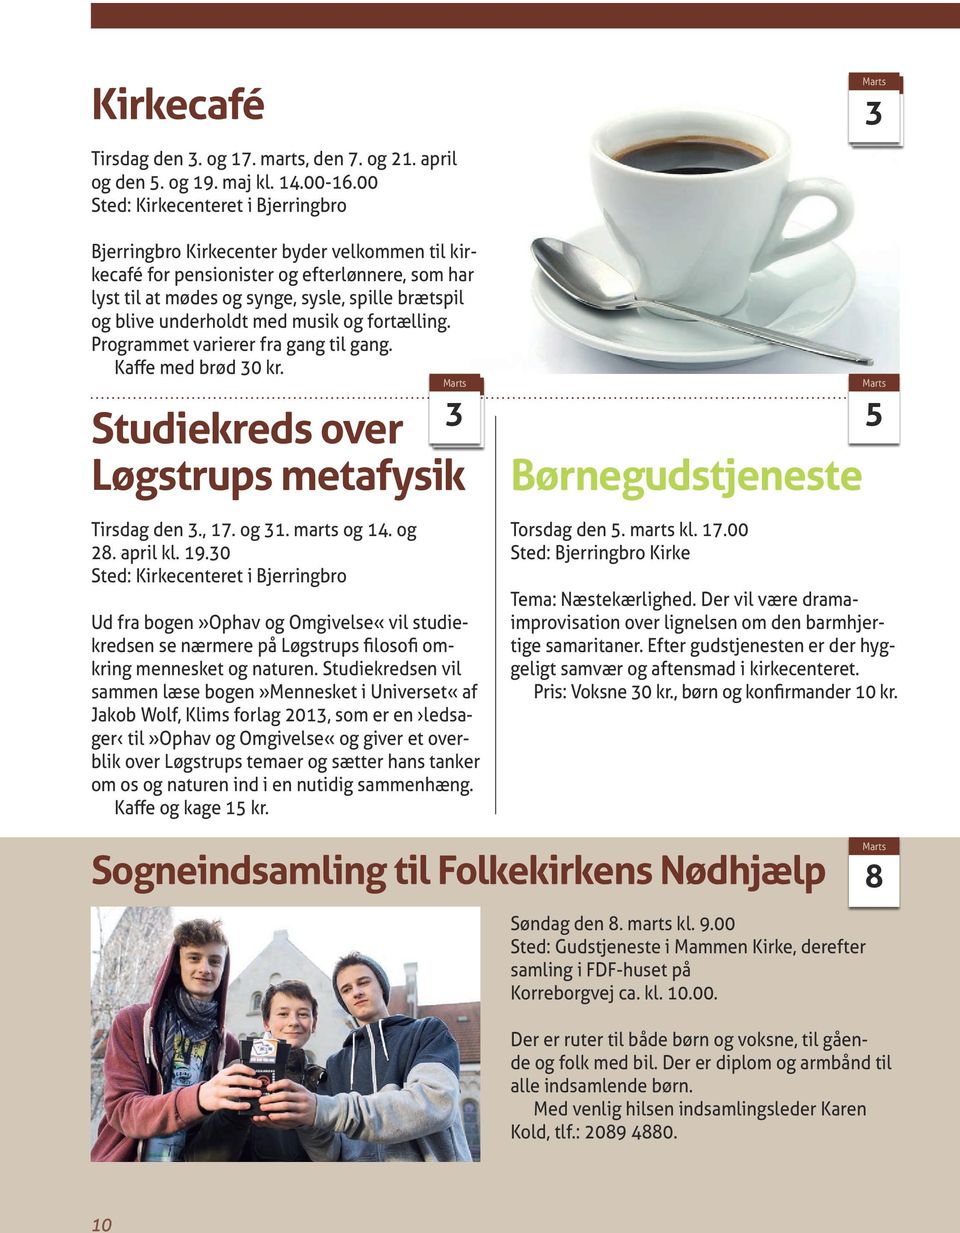 underholdt med musik og fortælling. Programmet varierer fra gang til gang. Kaffe med brød 30 kr. 3 Studiekreds over Løgstrups metafysik Tirsdag den 3., 17. og 31. marts og 14. og 28. april kl. 19.